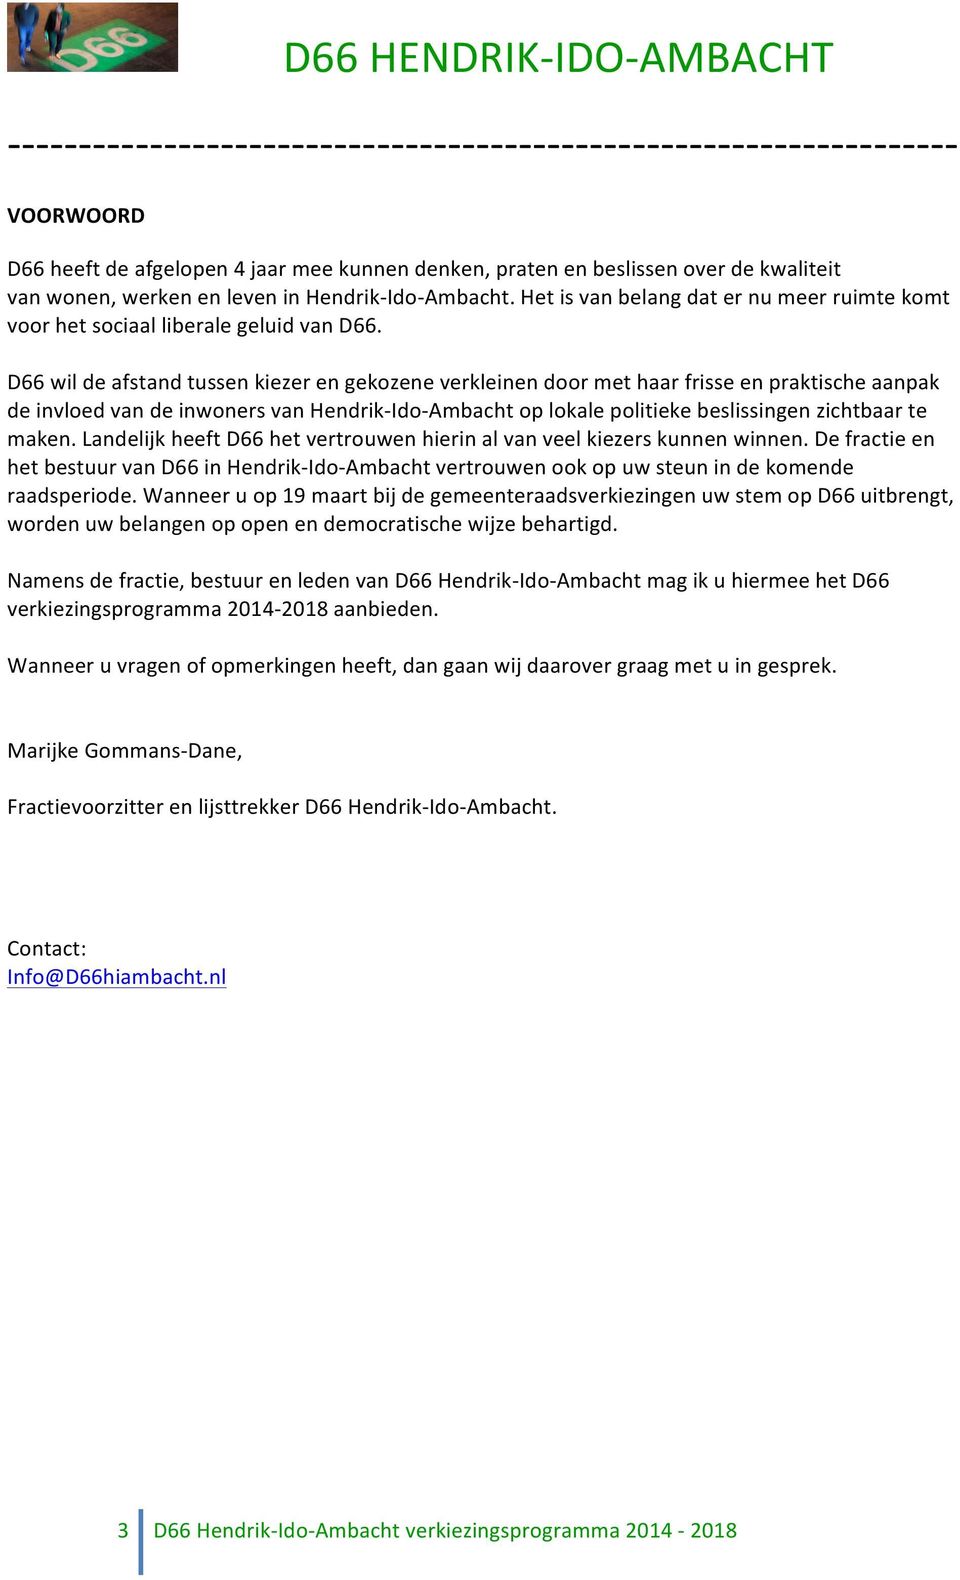 D66 wil de afstand tussen kiezer en gekozene verkleinen door met haar frisse en praktische aanpak de invloed van de inwoners van Hendrik- Ido- Ambacht op lokale politieke beslissingen zichtbaar te